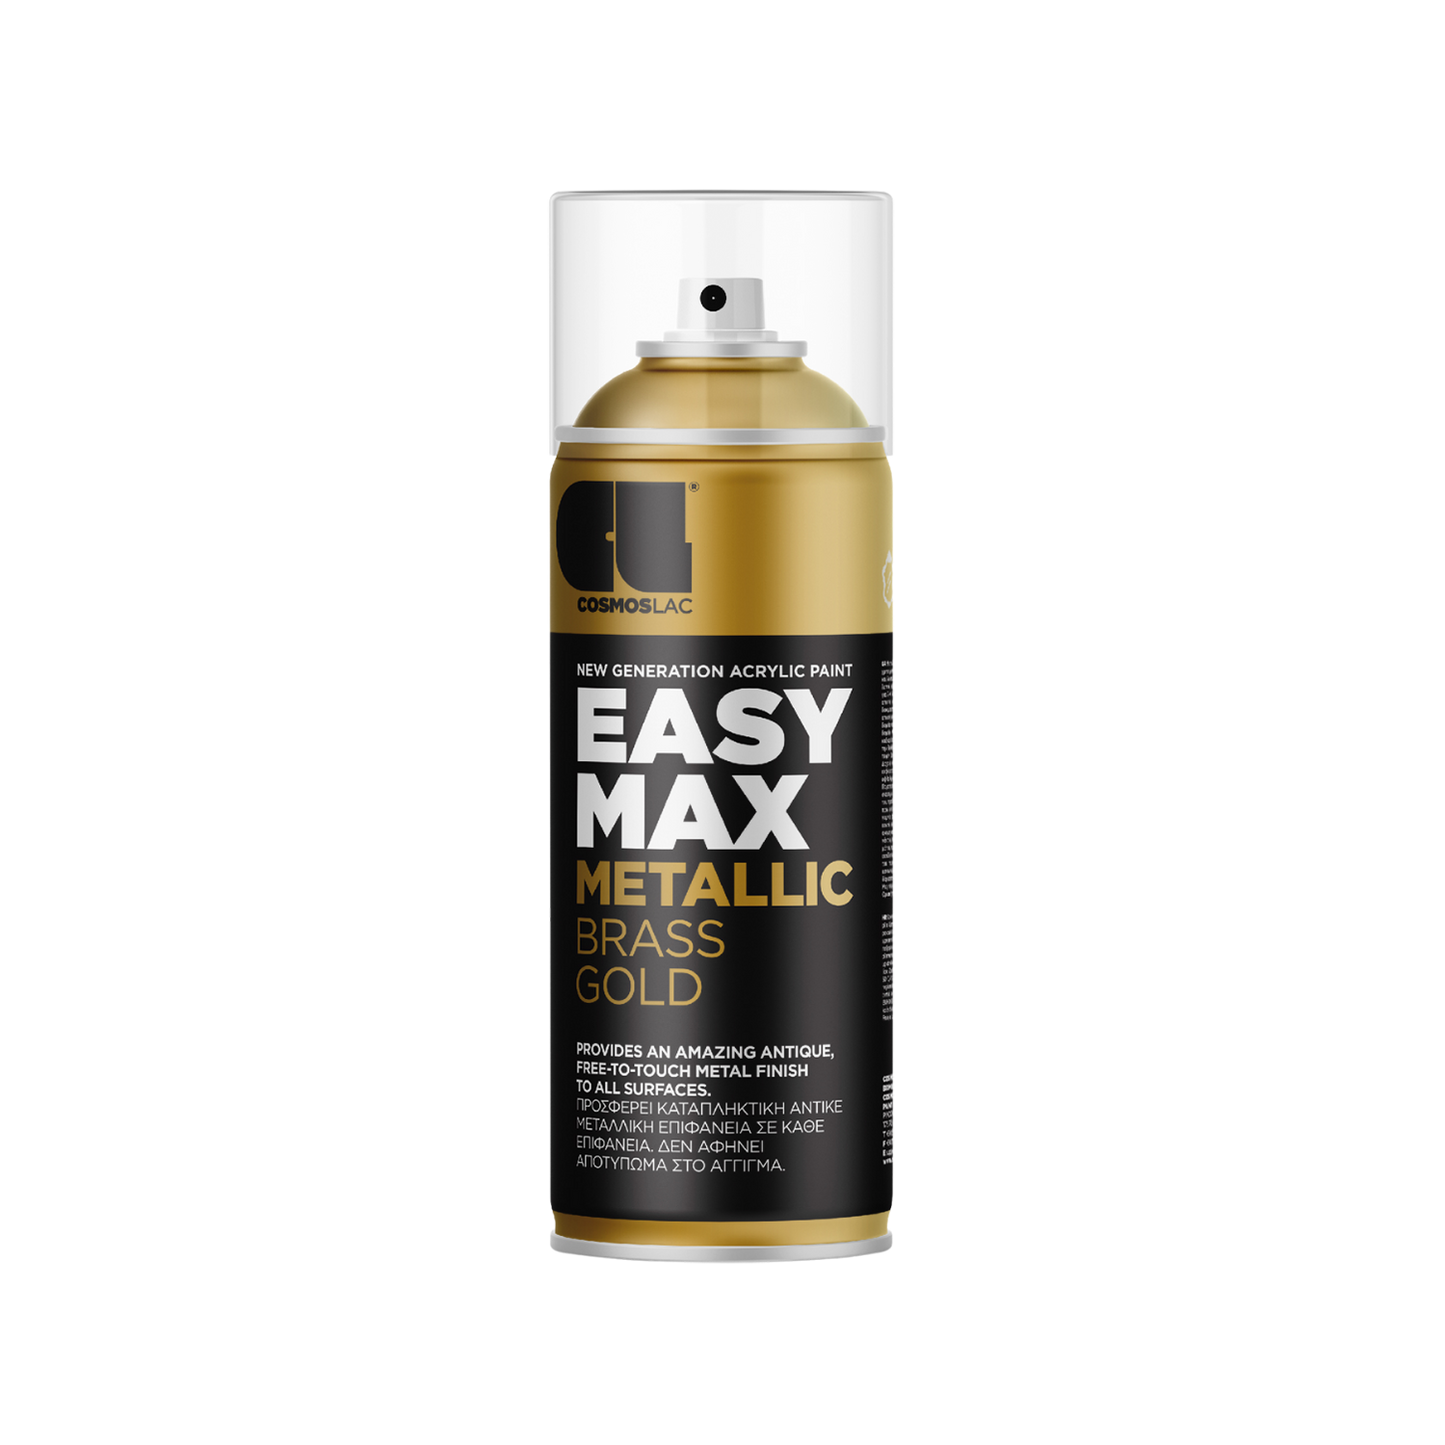 COSMOS LAC EASY MAX Premium Acryllack Sprühlack zum Upcycling und DIY Projekten von Möbeln und Dekoobjekten Schwarze Sprühflasche mit Gold Metallic 